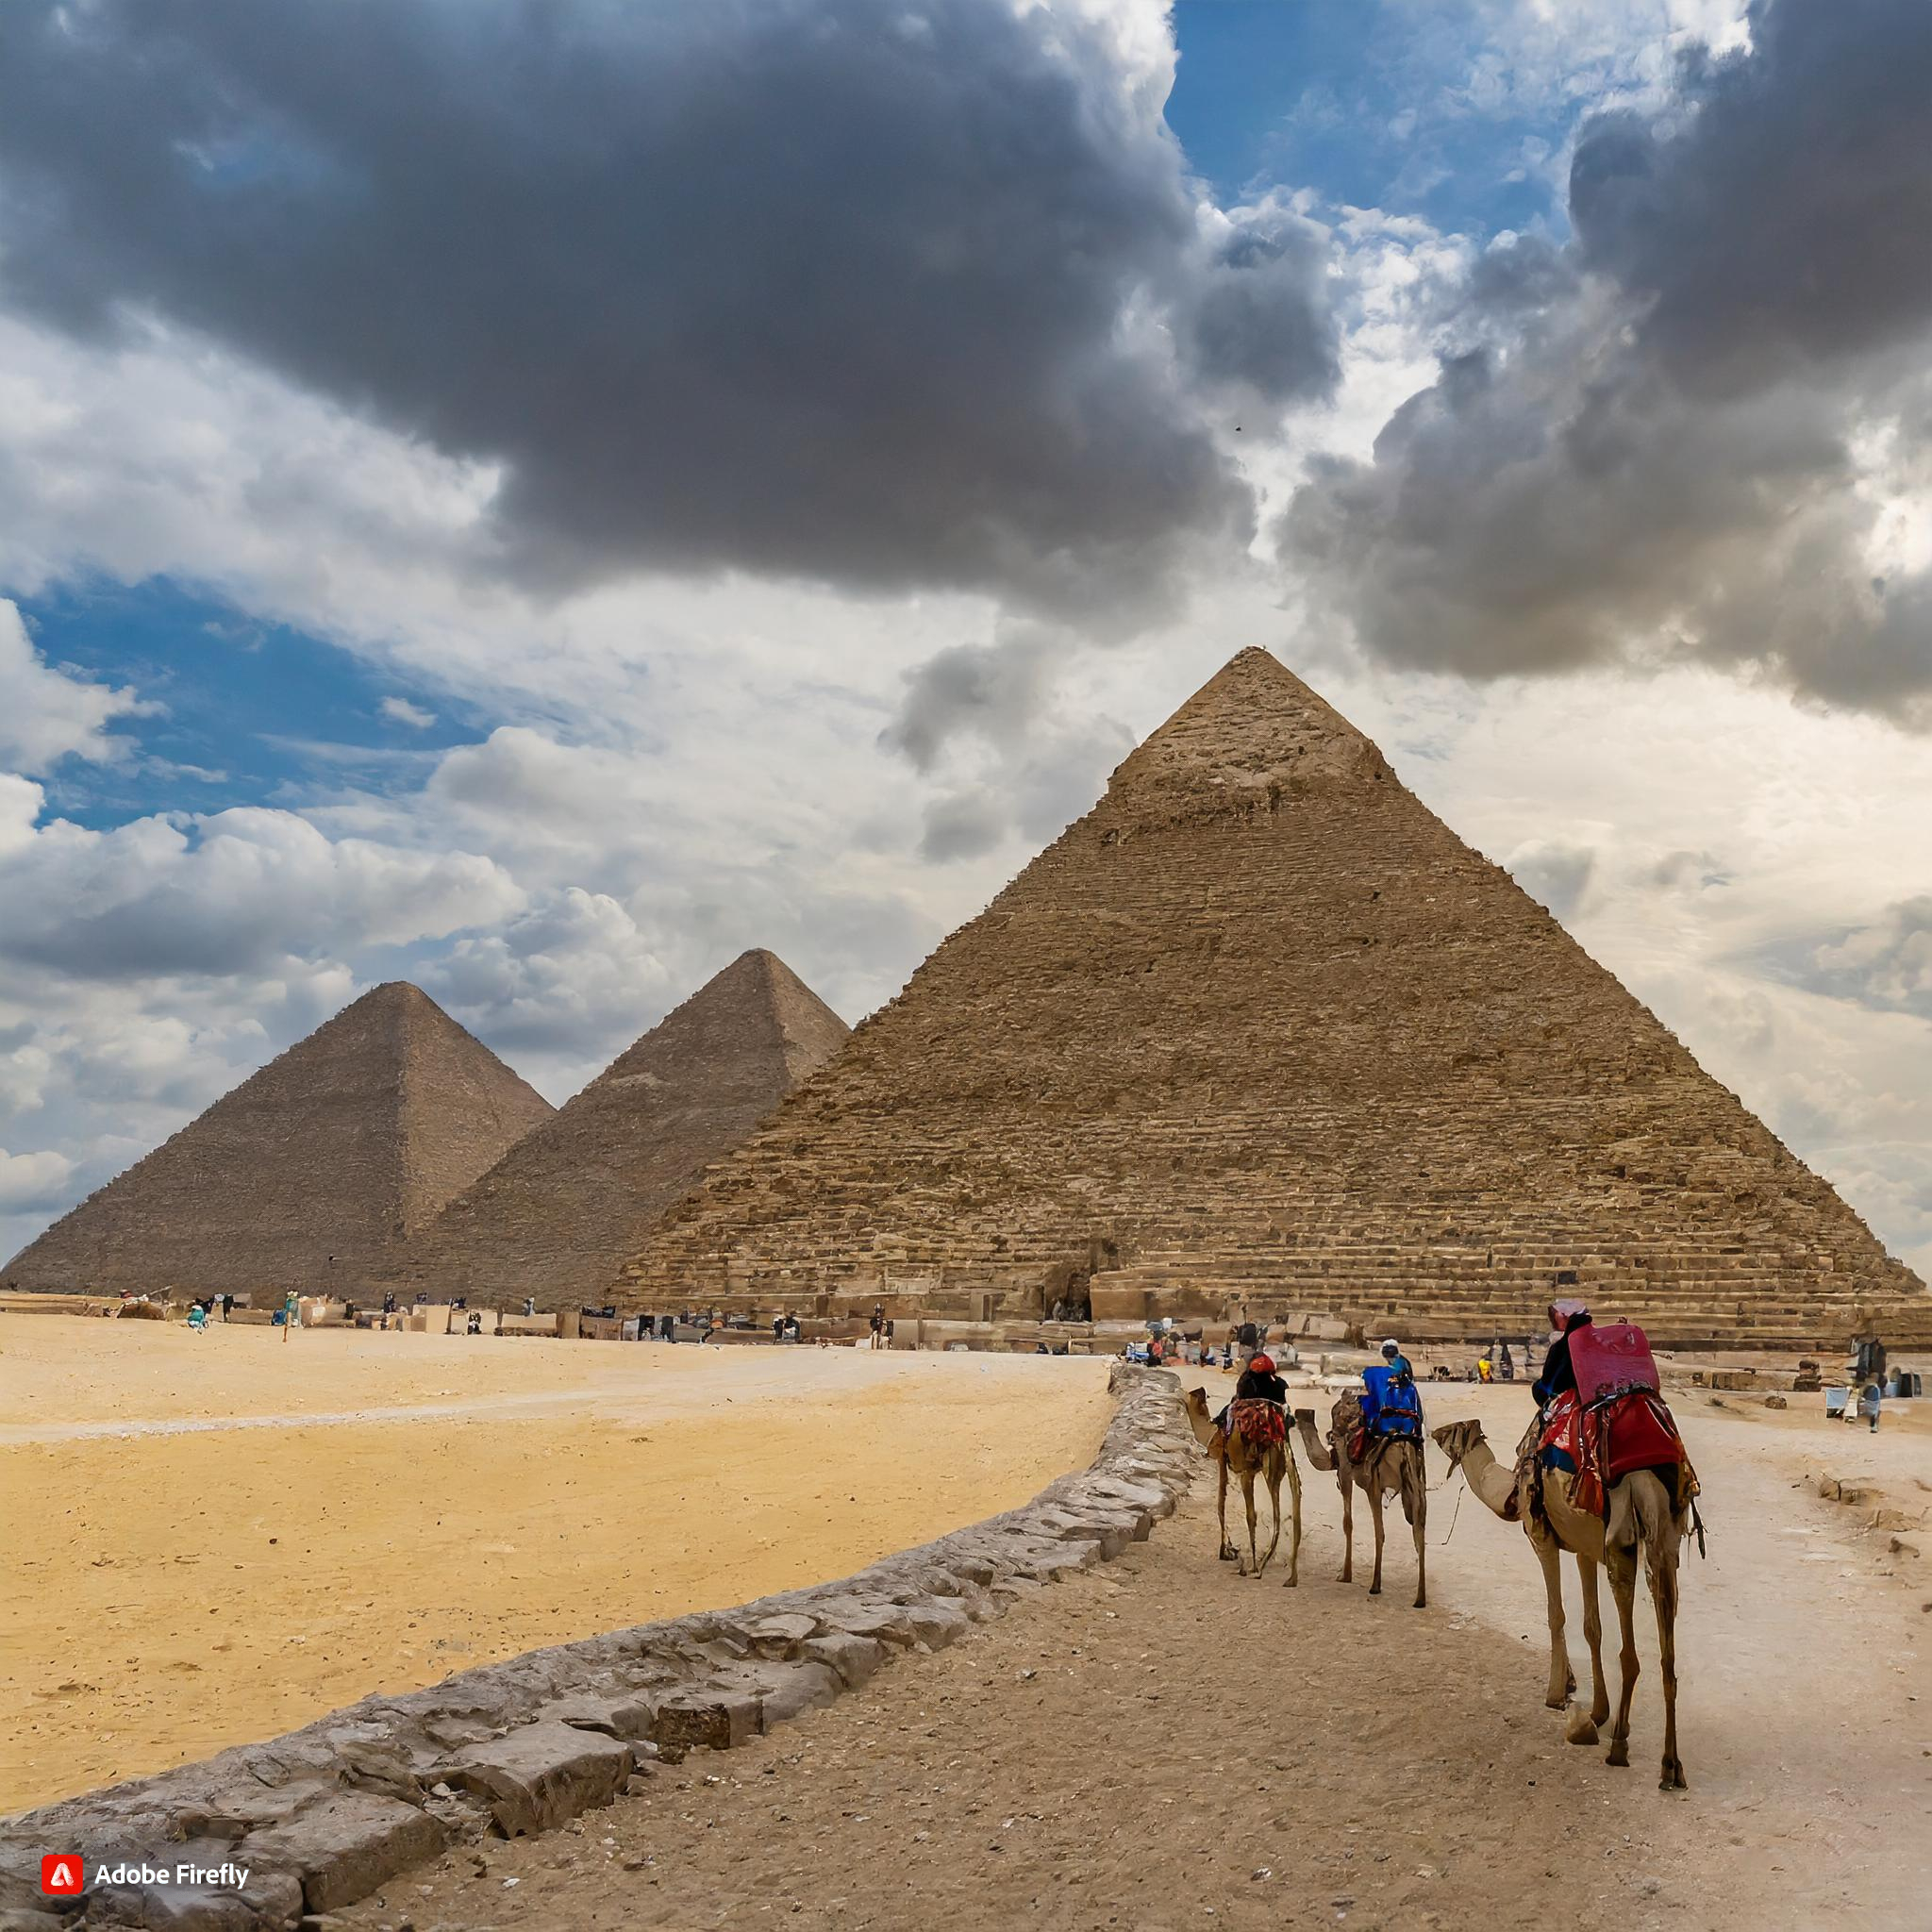  Firefly piramides de egypto con camellos por detras y una esfinge tambien 87654